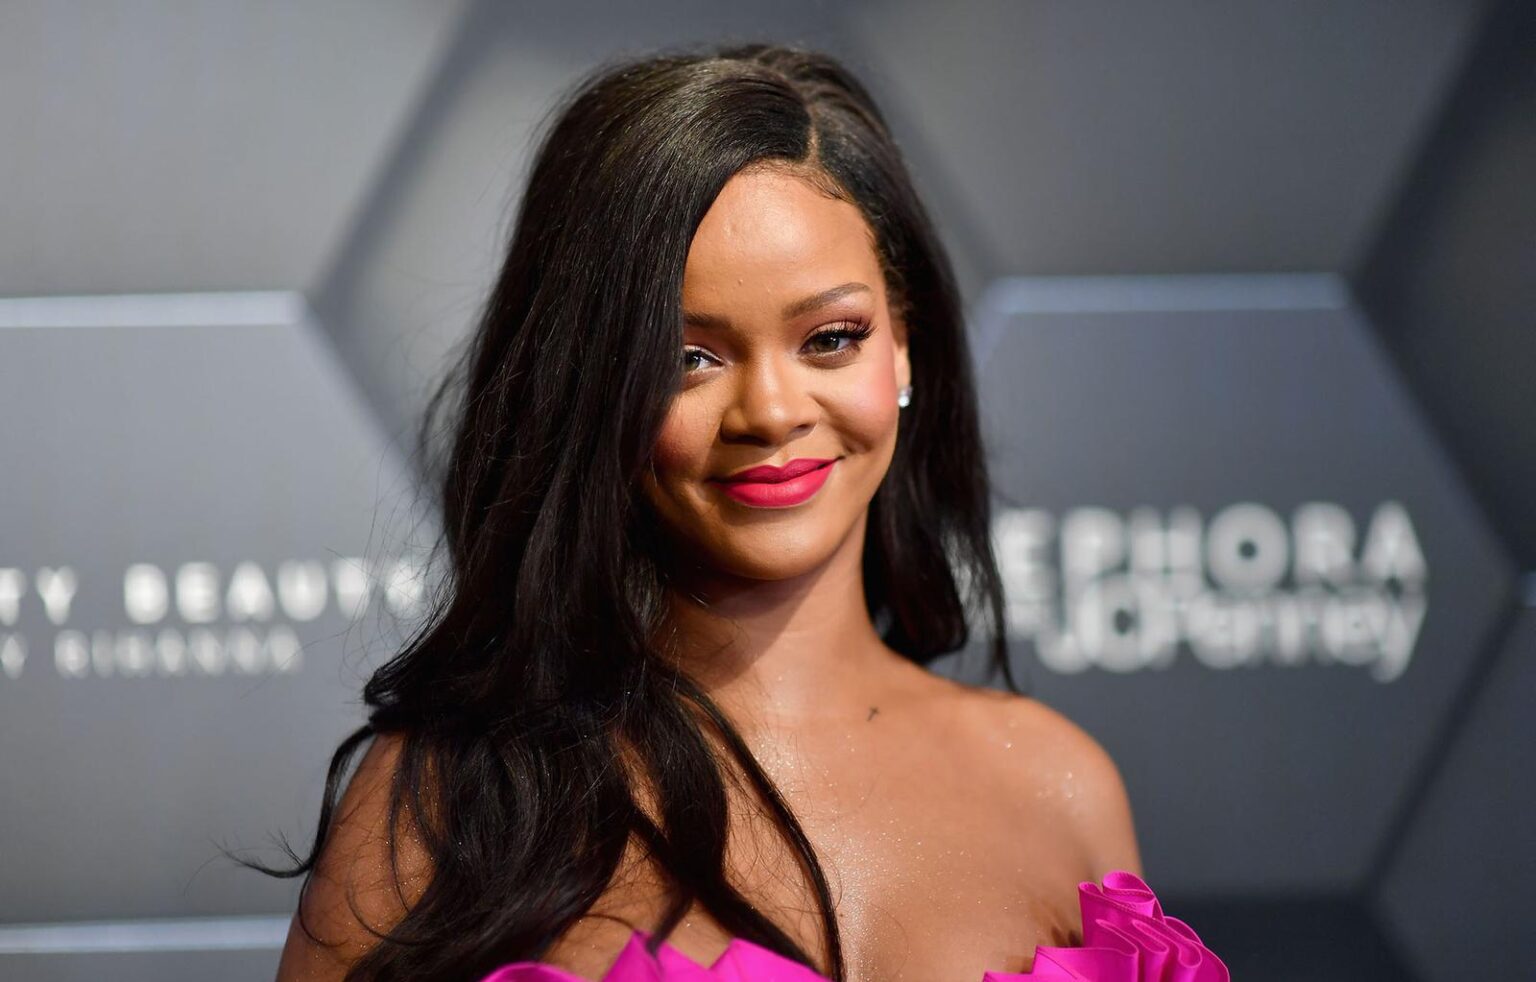 Zvonurile potrivit cărora Rihanna revine în PRIM plan muzical sunt confirmate oficial chiar de ea pe social media. VIDEO